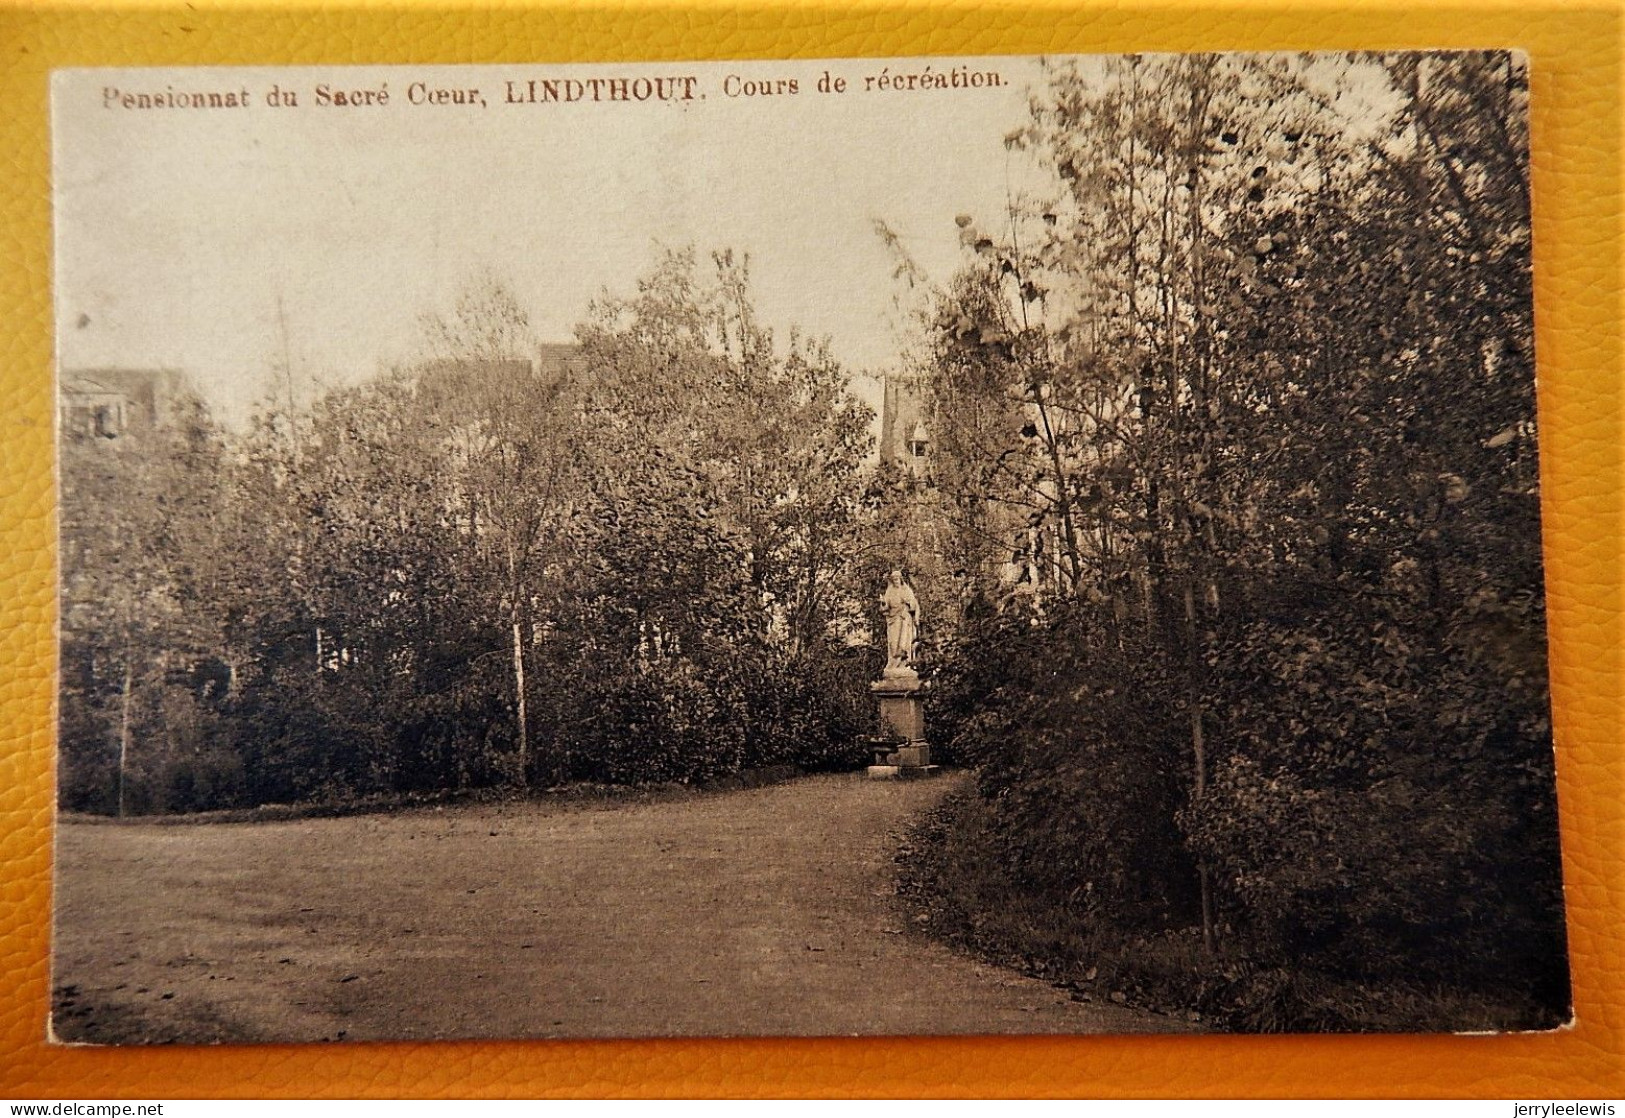 LINDTHOUT - Pensionnat Du Sacré Coeur - Cour De Récréation - Woluwe-St-Lambert - St-Lambrechts-Woluwe